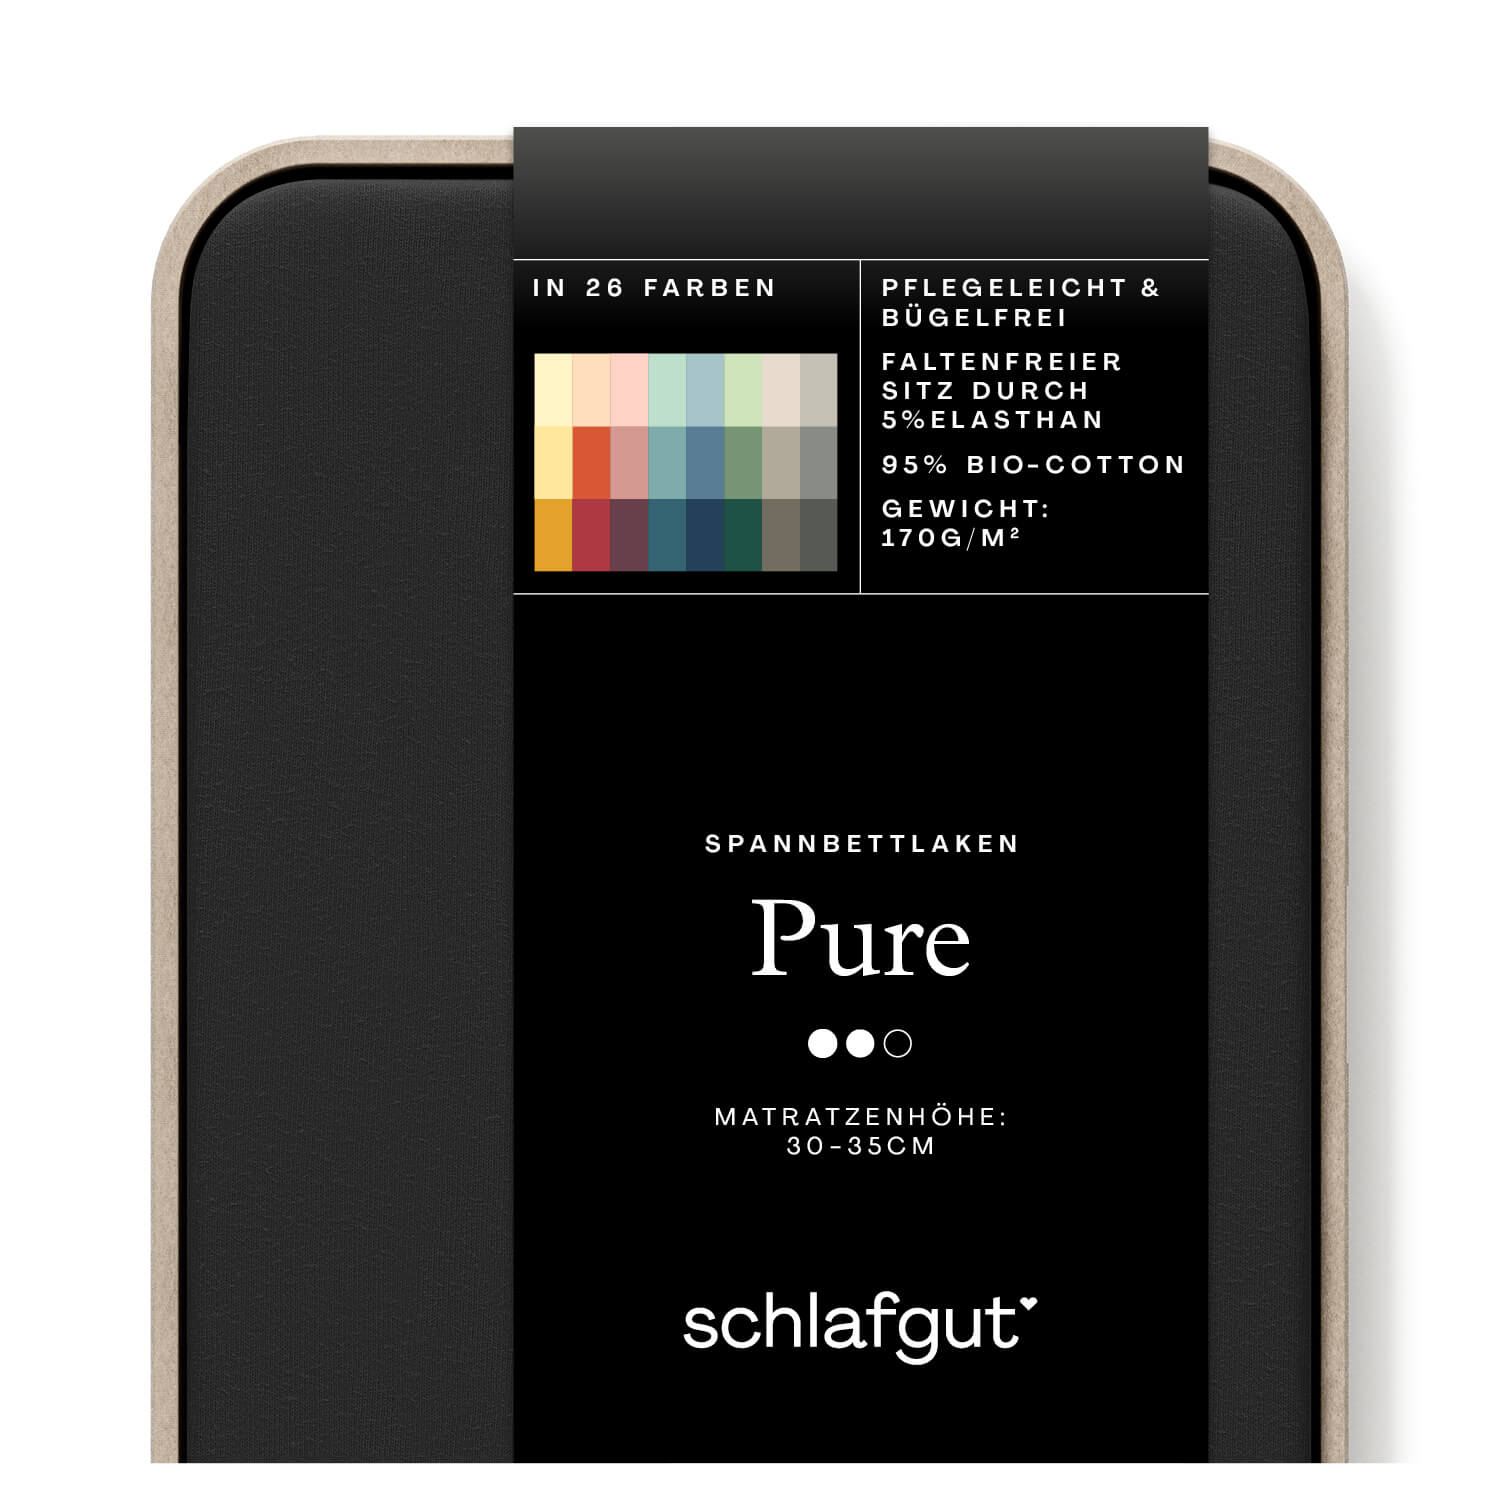 Das Produktbild vom Spannbettlaken der Reihe Pure in Farbe off-black von Schlafgut